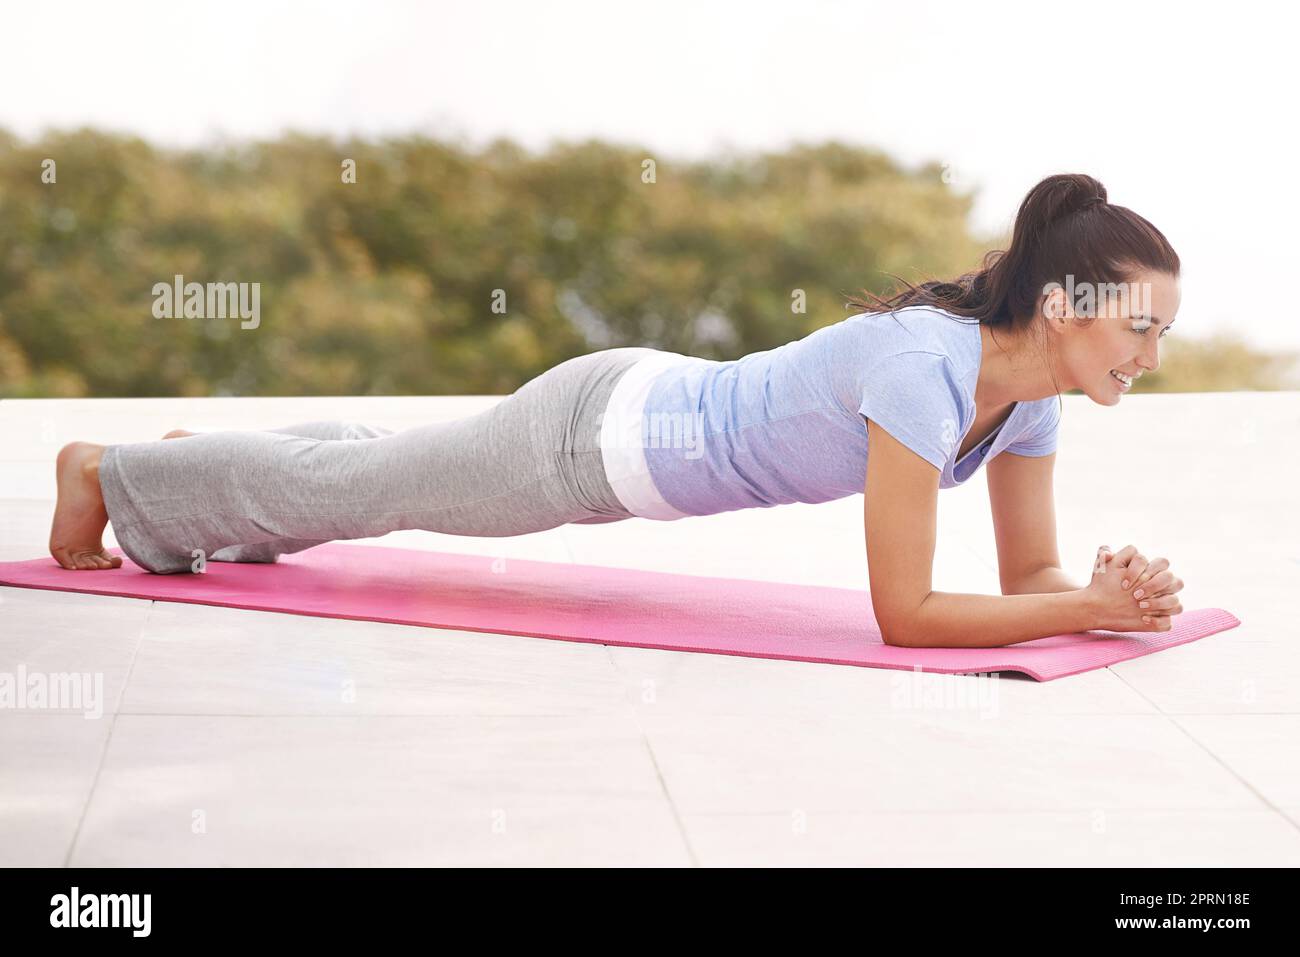 Travailler son noyau. Prise de vue en longueur d'une jeune femme faisant du yoga à l'extérieur. Banque D'Images